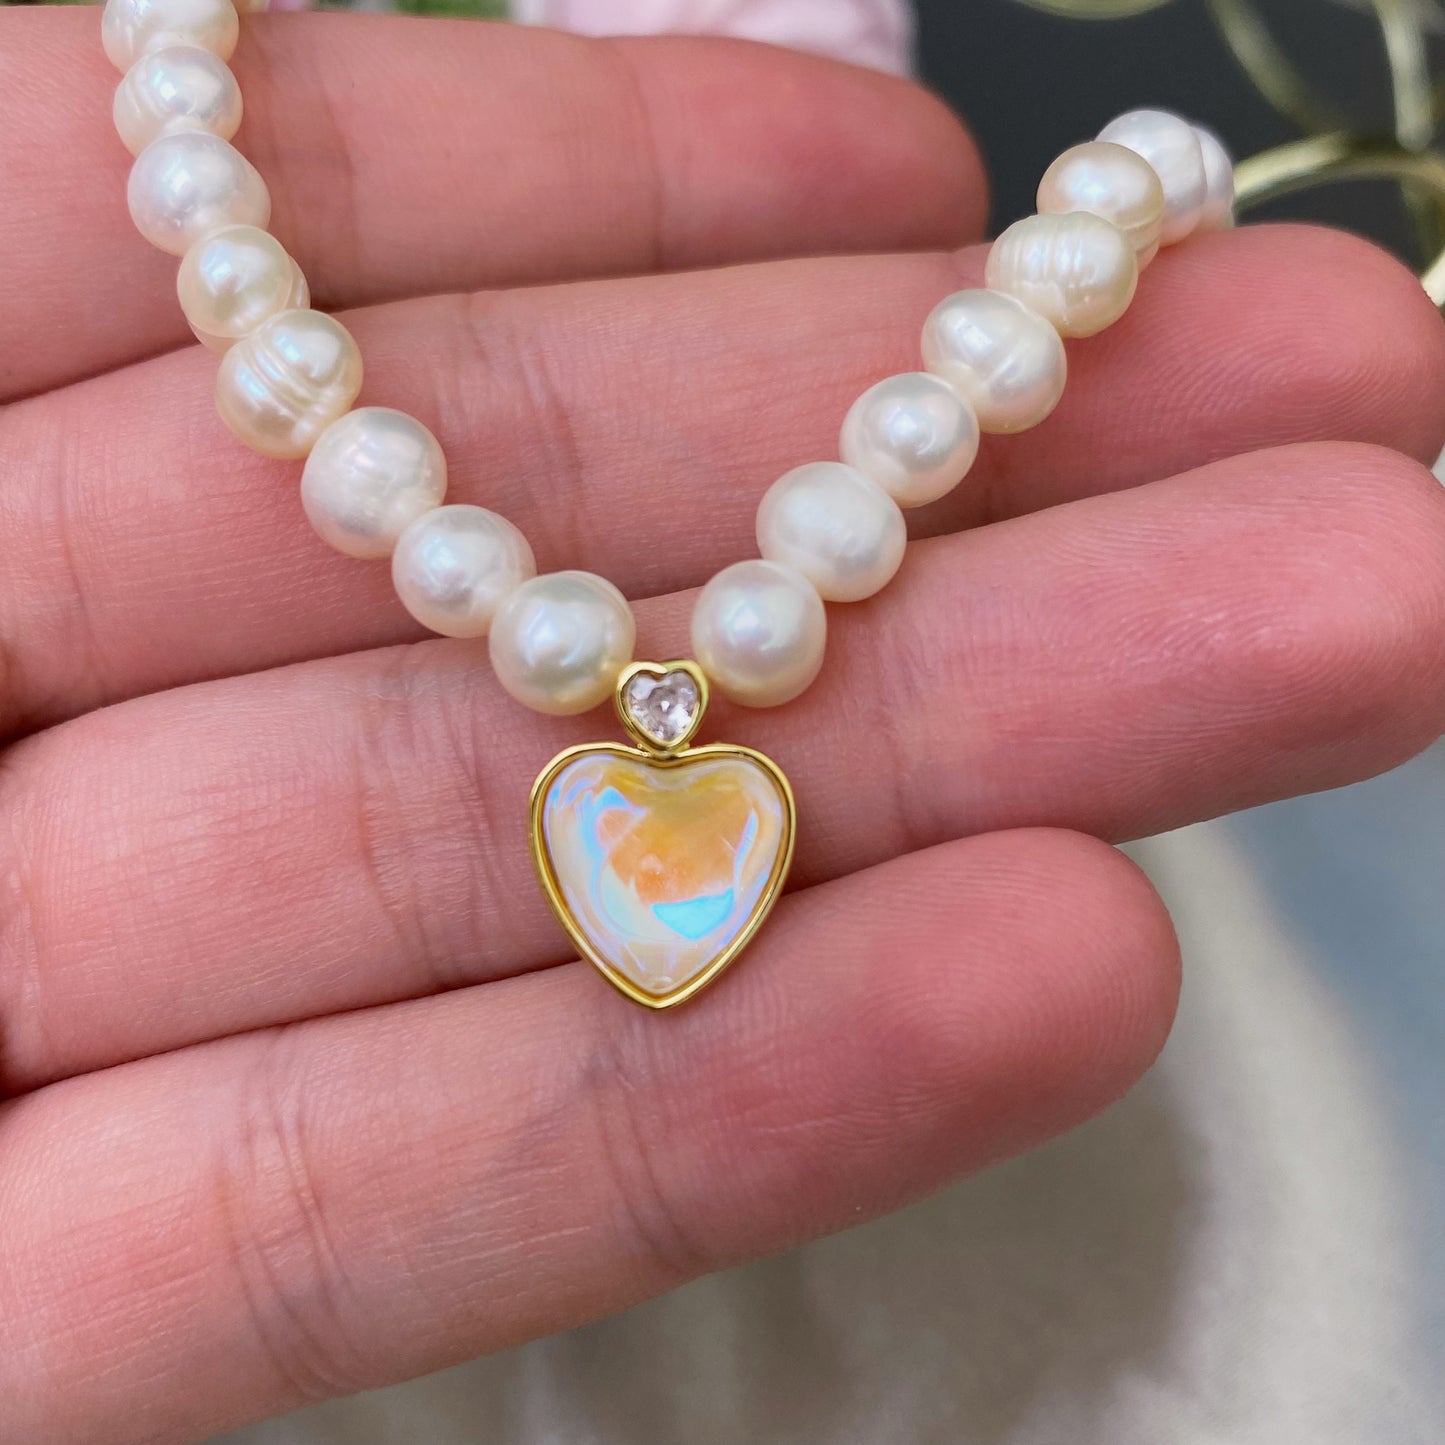 Flussperlen-Halskette mit dekorativem Herz (verstellbare Länge 35 cm + 5 cm)